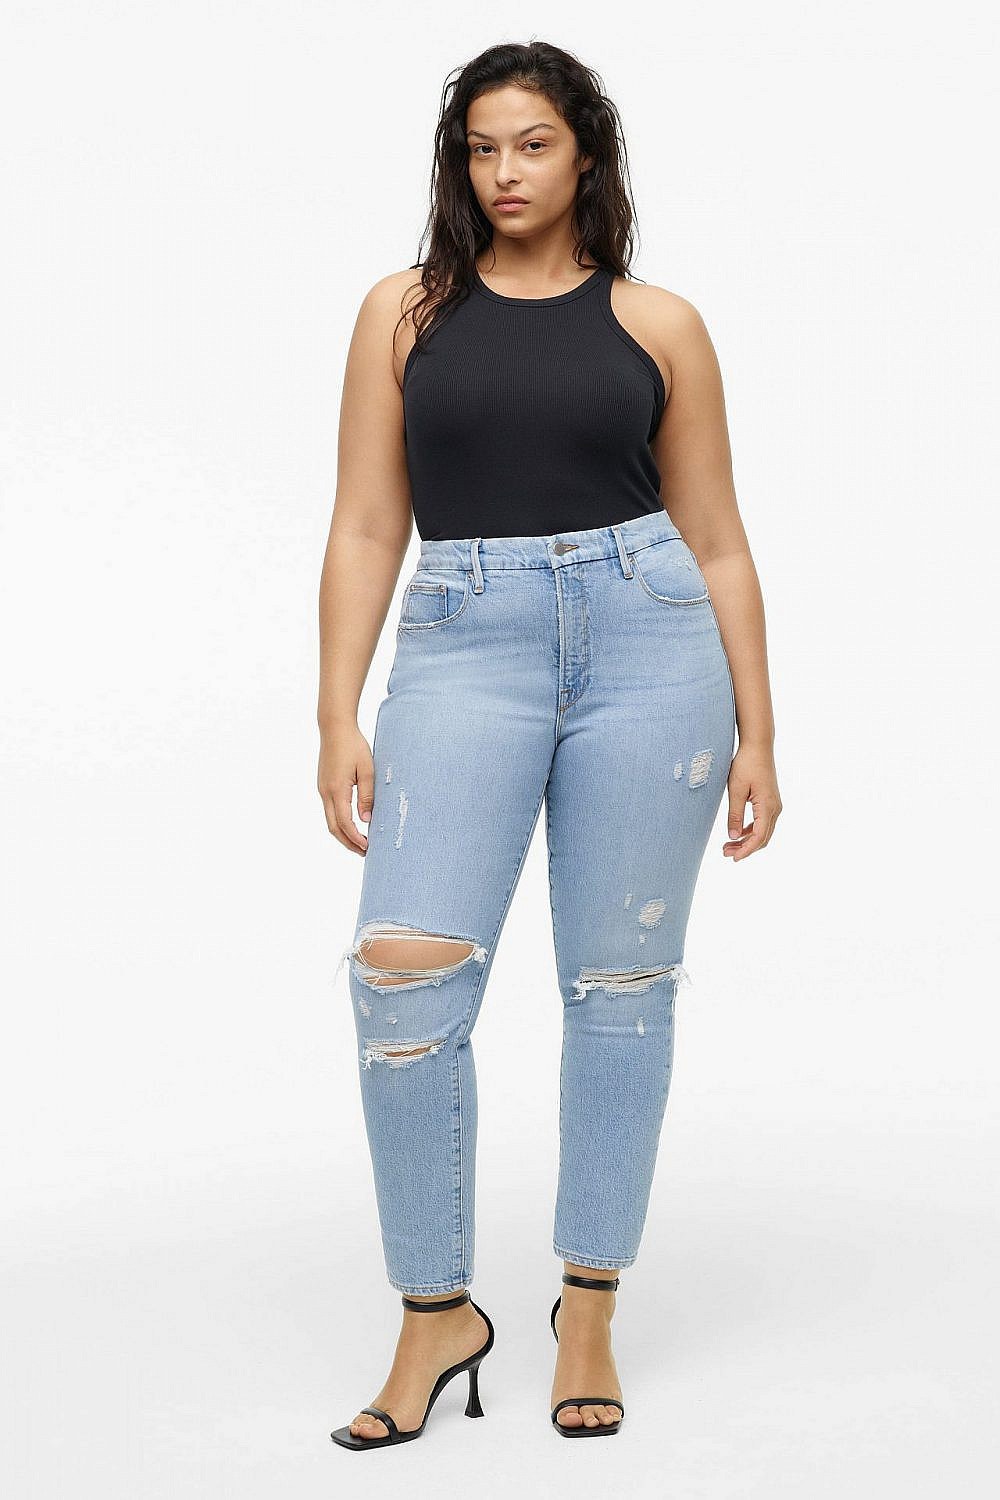 דגם High-Rise Classic Slim jeans של זארה ו-Good American האהוב ביותר על קלואי מתוך הקולקציה. 69.90 דולר באתר זארה ארה״ב | צילום: האתר הרשמי